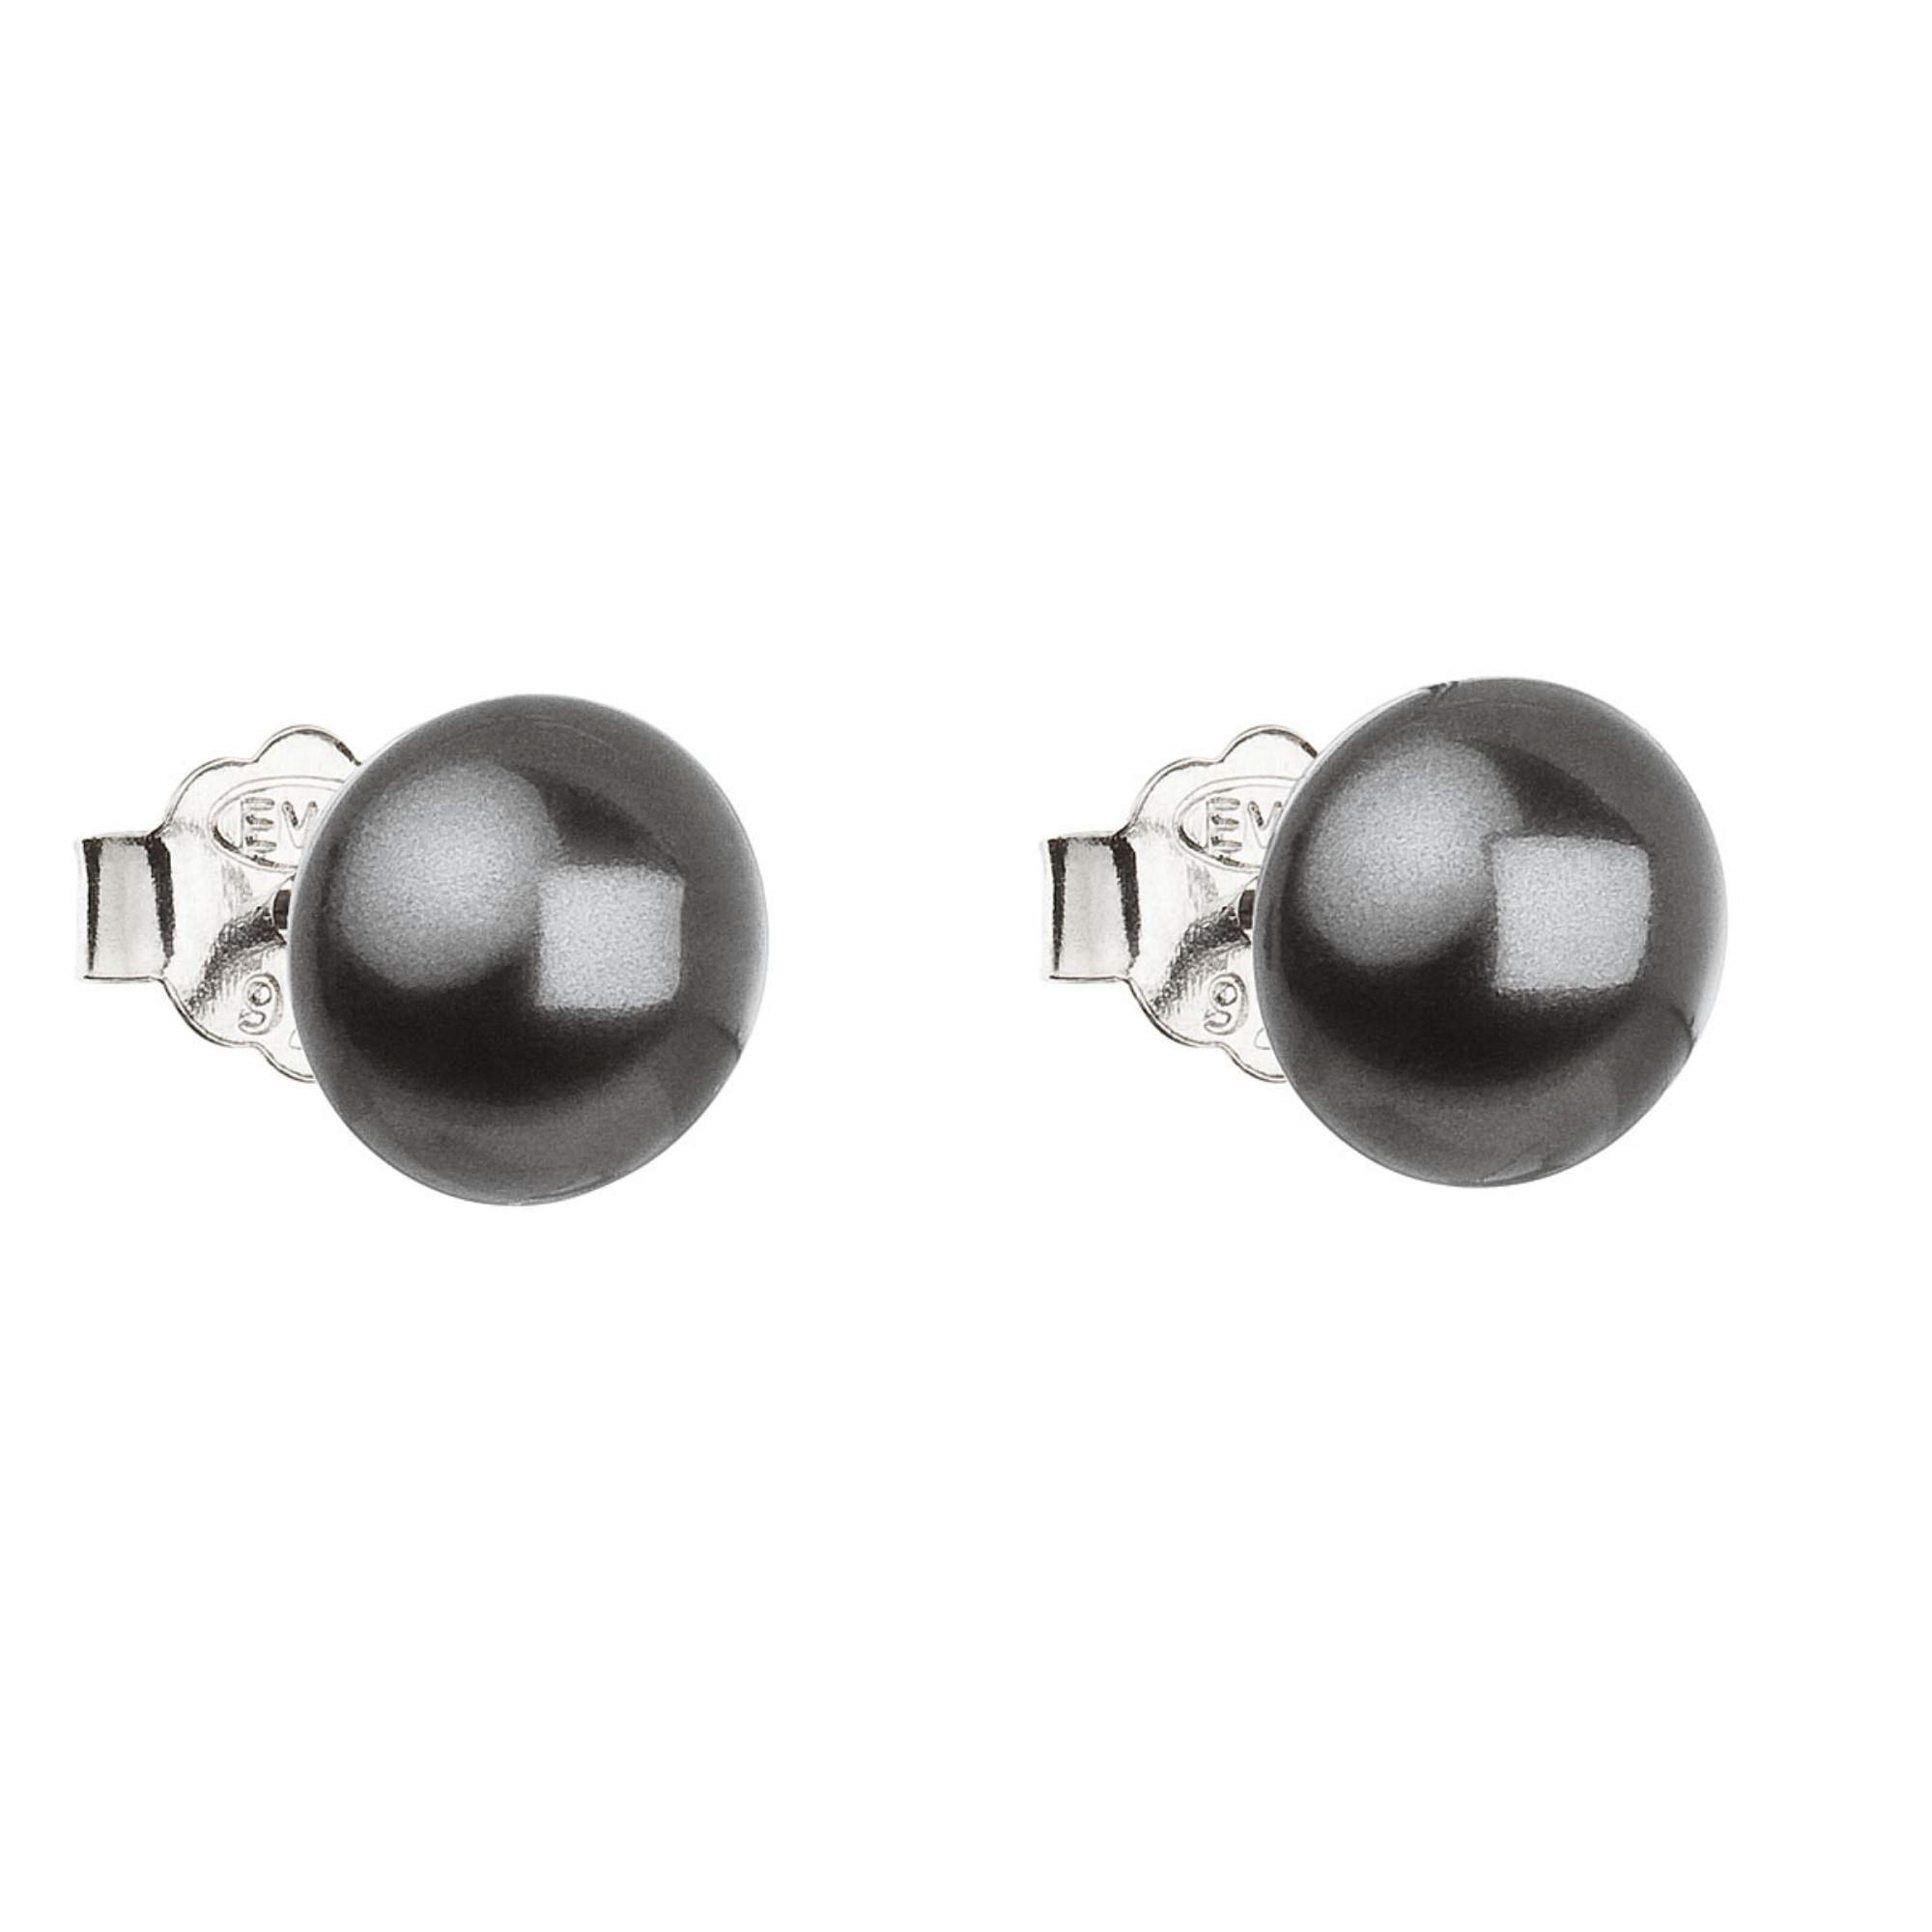 Strieborné náušnice pecka s perlou Swarovski šedé okrúhle grey